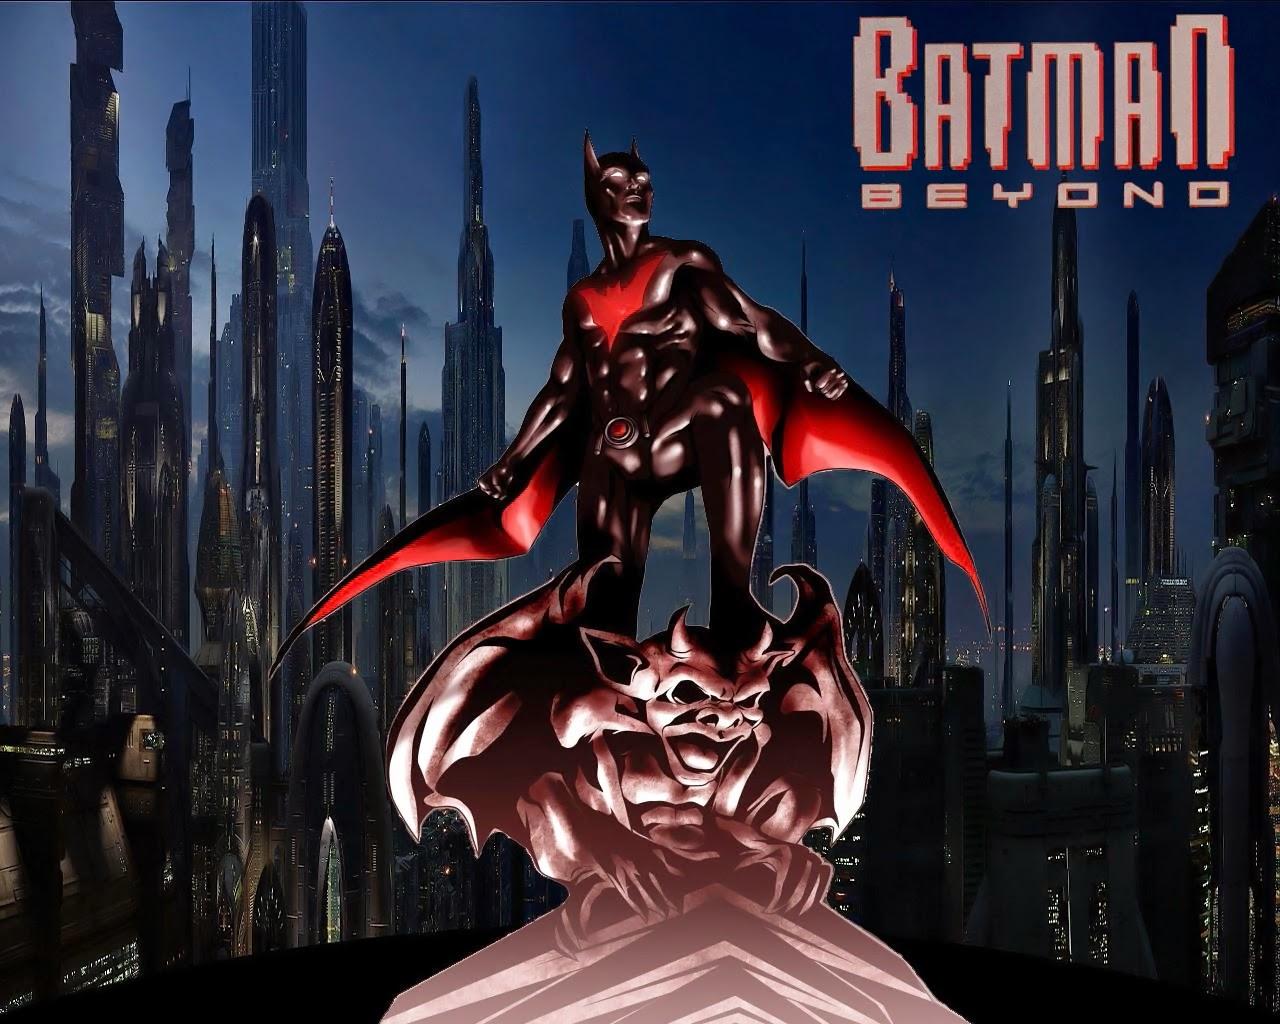 Batman Beyond episodes. Watch cartoons online